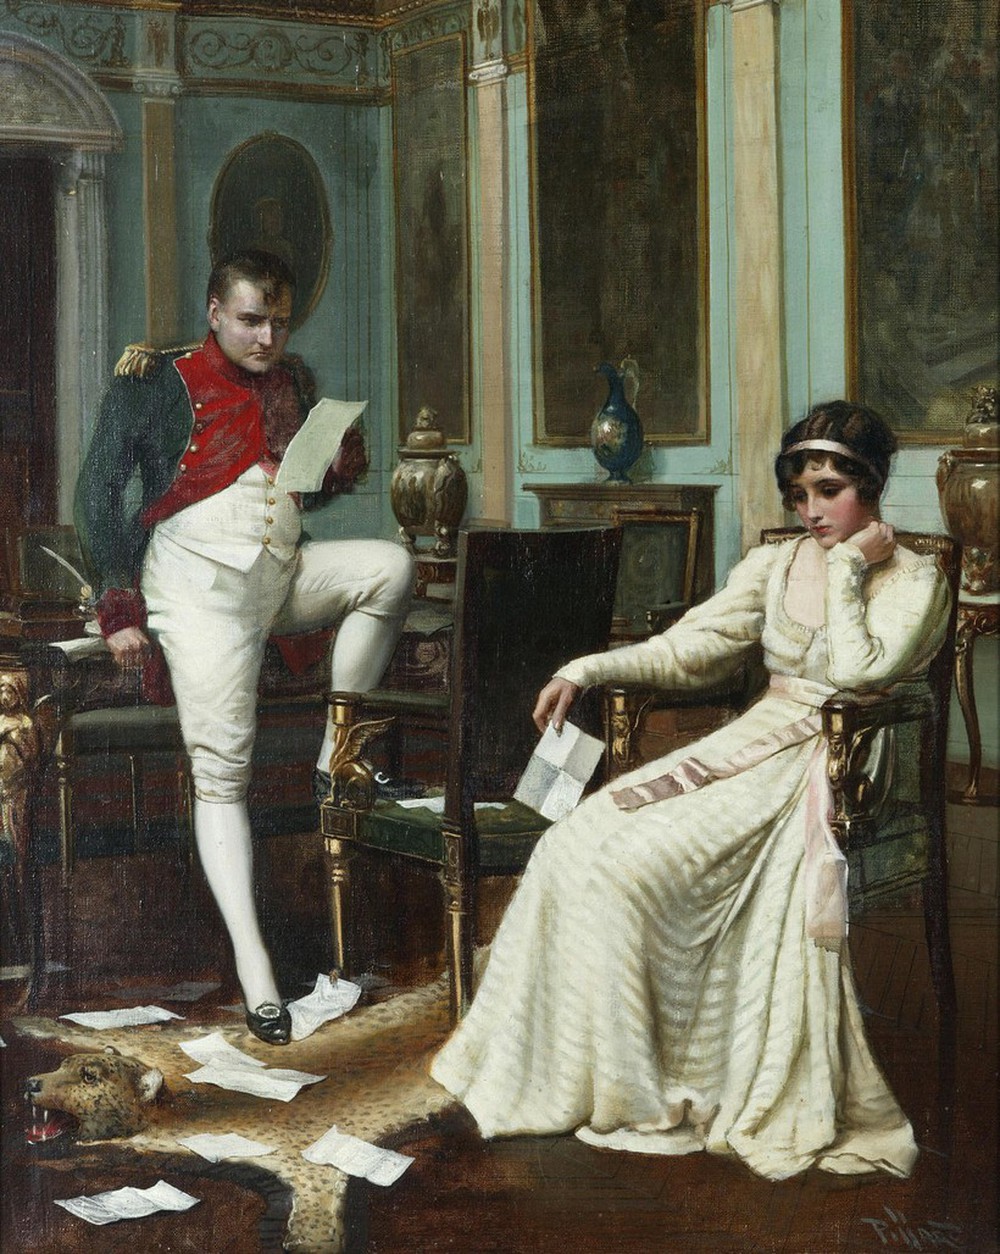 Napoléon mãi yêu một phụ nữ không chính chuyên - Ảnh 1.